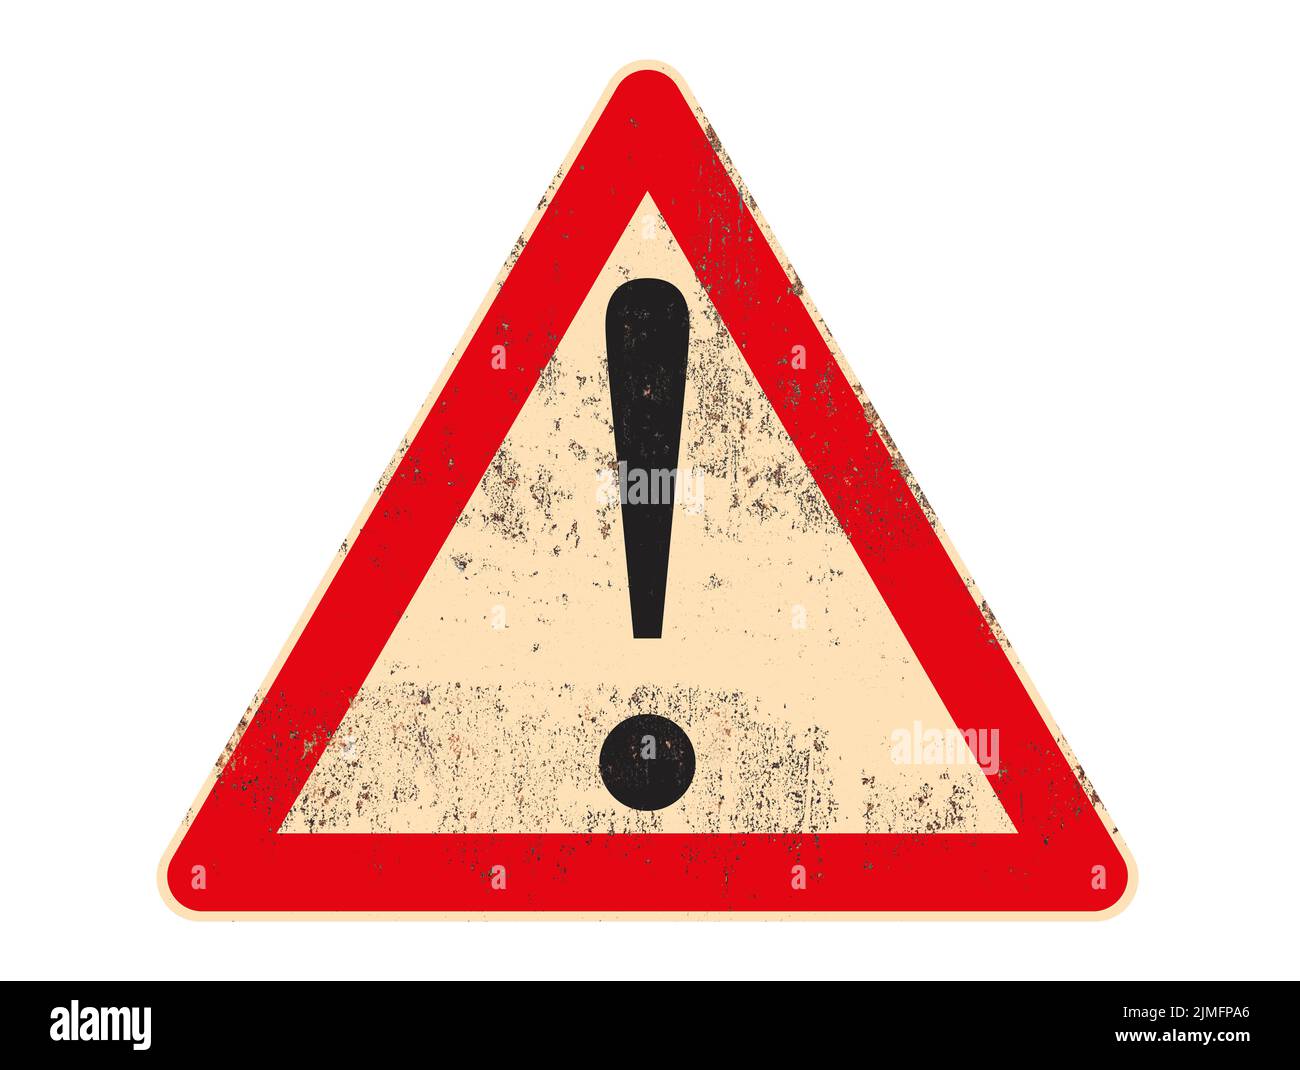 Señal de tráfico Símbolo de advertencia sobre una placa de metal oxidada y gris aislada sobre fondo blanco. Ilustración de alta calidad Foto de stock